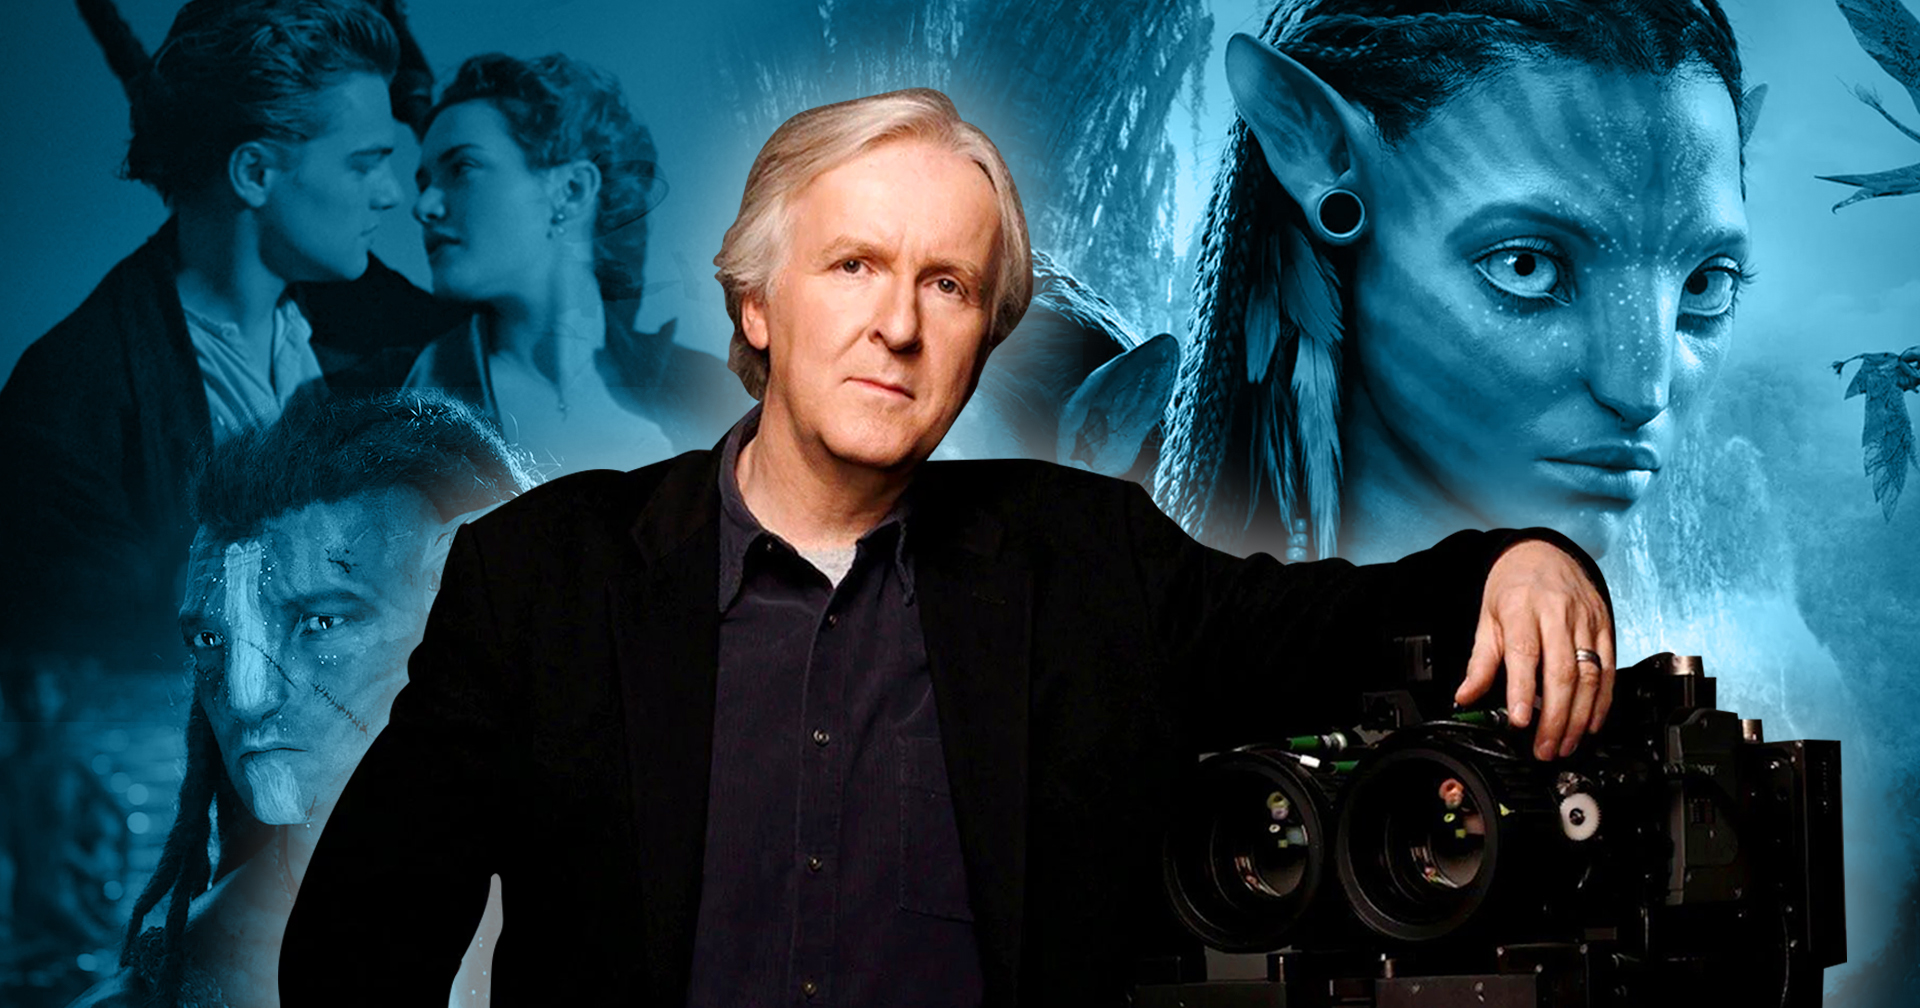 ประวัติศาสตร์ต้องจารึก James Cameron เป็นมนุษย์คนแรกที่สร้างหนังแล้วได้เงินเกิน 1,500 ล้านเหรียญถึง 3 เรื่อง !